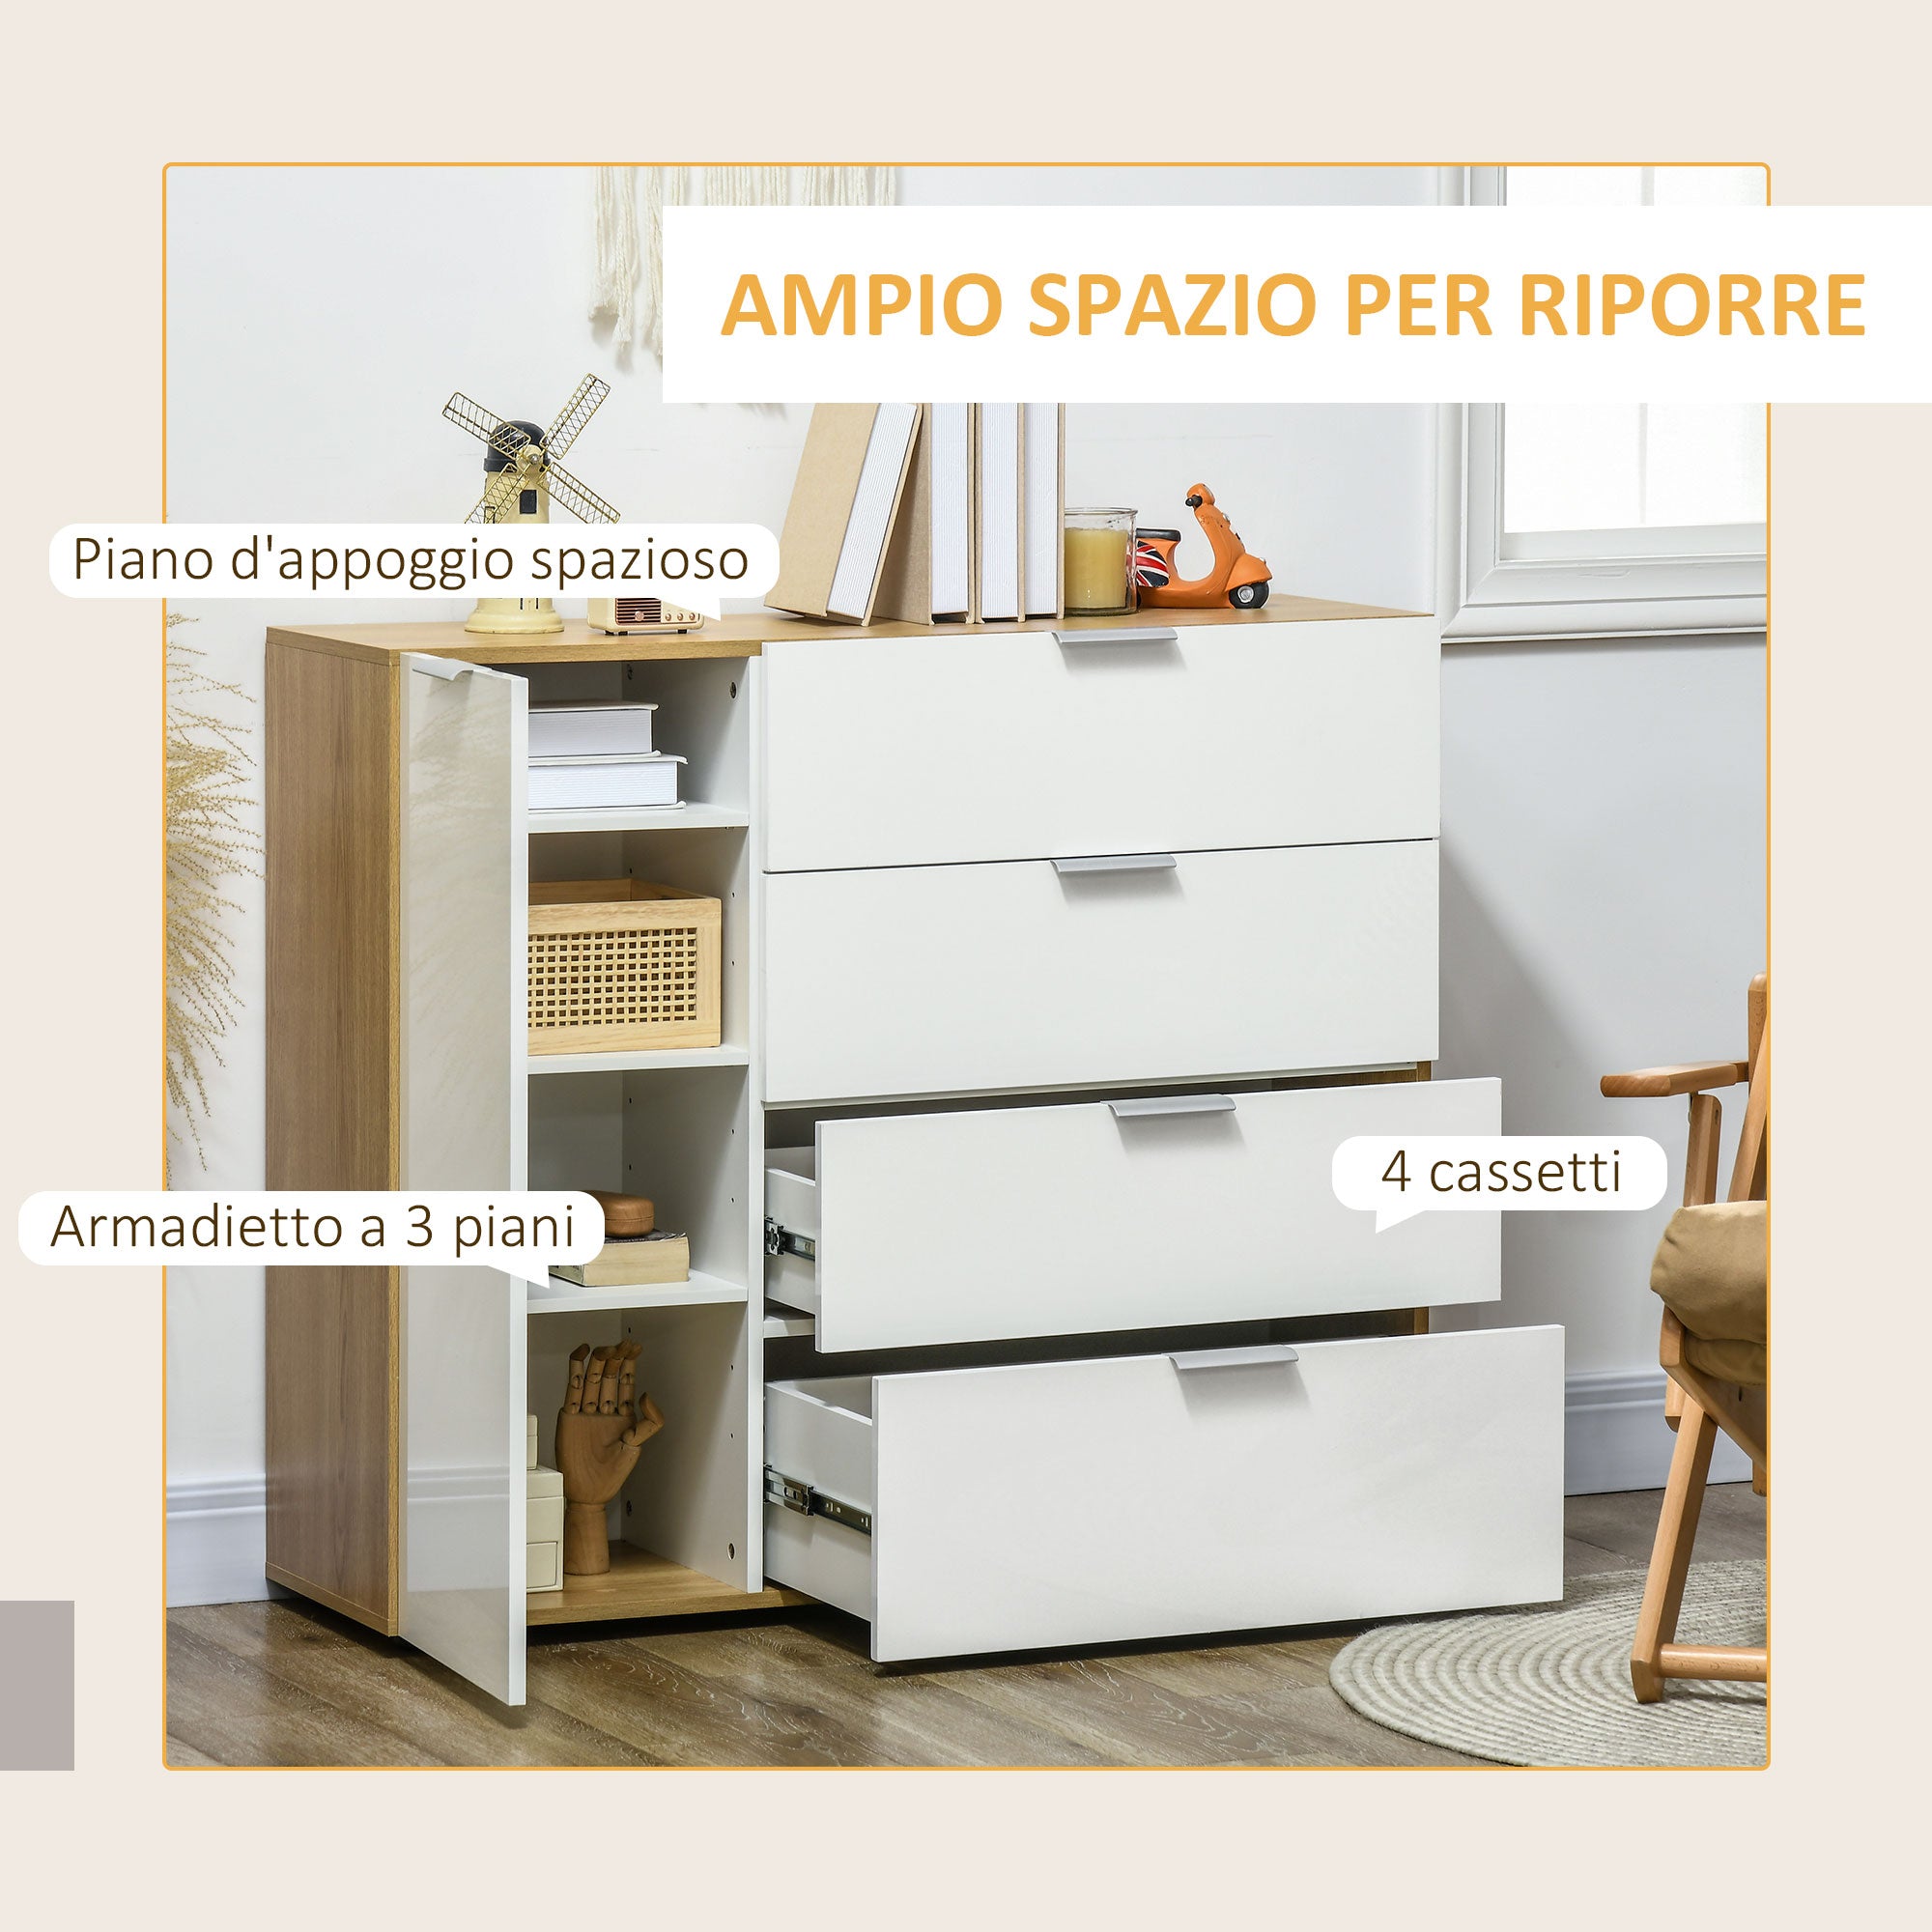 EASYCOMFORT Mobiletto Multiuso con 3 Ripiani Aperti e Cassetti, Mobile per  Soggiorno, Cucina, Ufficio in Legno Bianco, 60x40x100cm